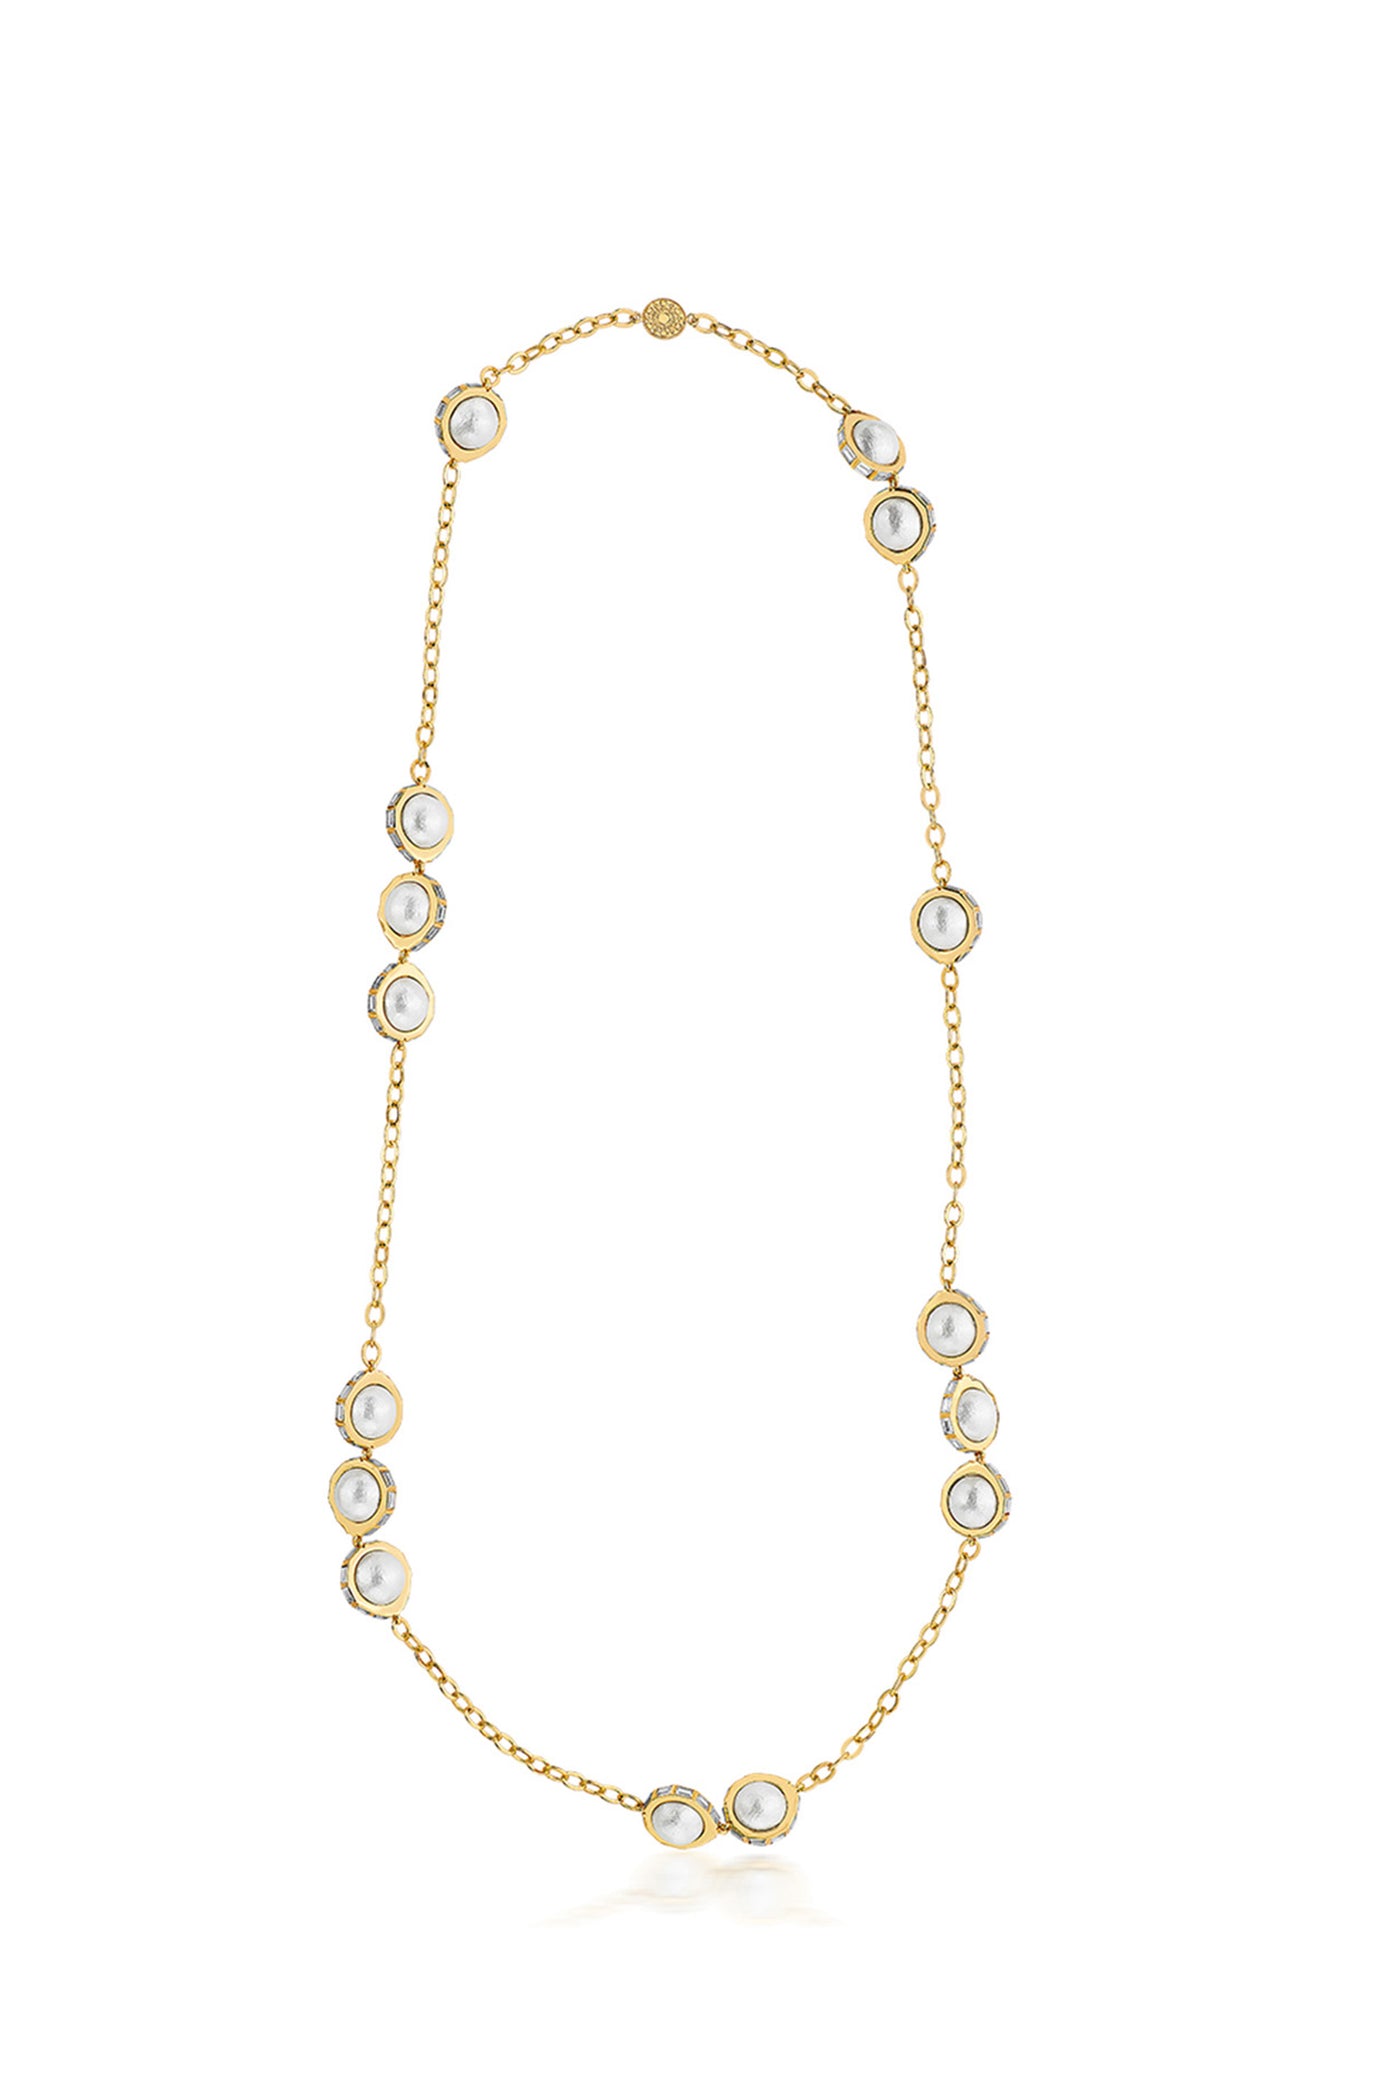 isharya Amara Dainty Pearl Necklace fashion jewellery online shopping melange singapore indian designer wear